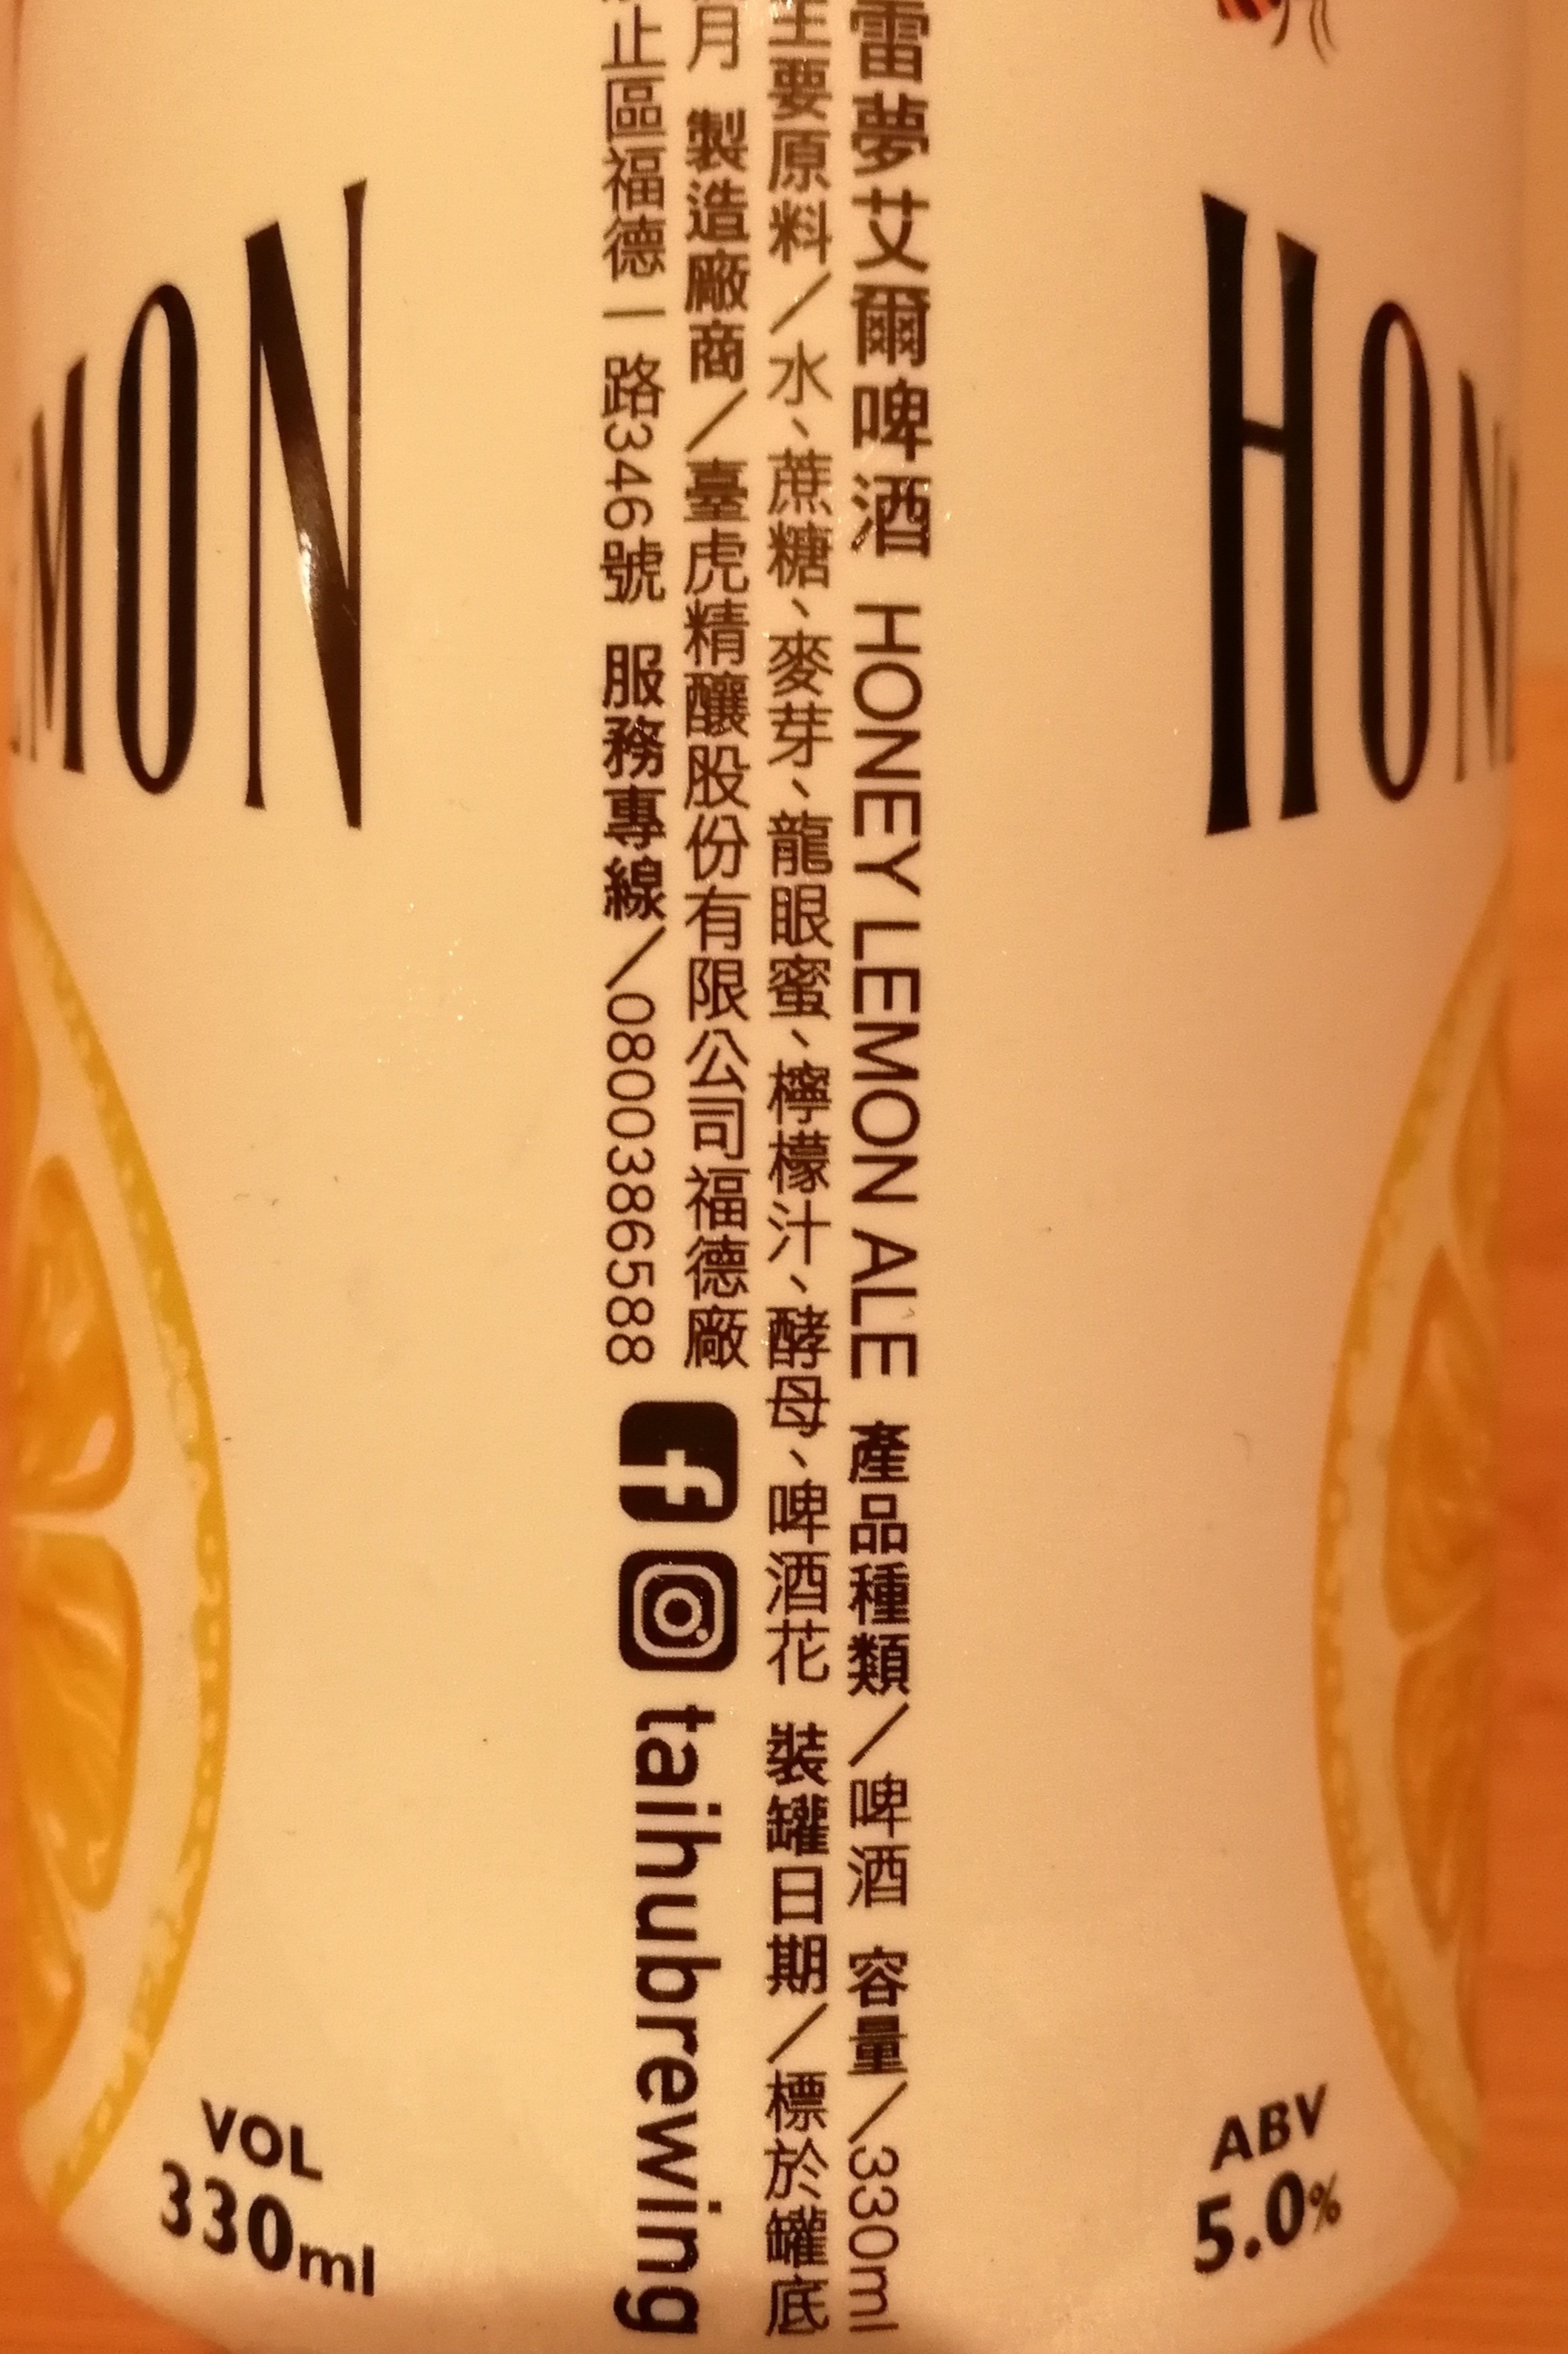 臺虎精釀,Taihubrewing,哈尼雷夢艾爾啤酒,HoneyLemonAle